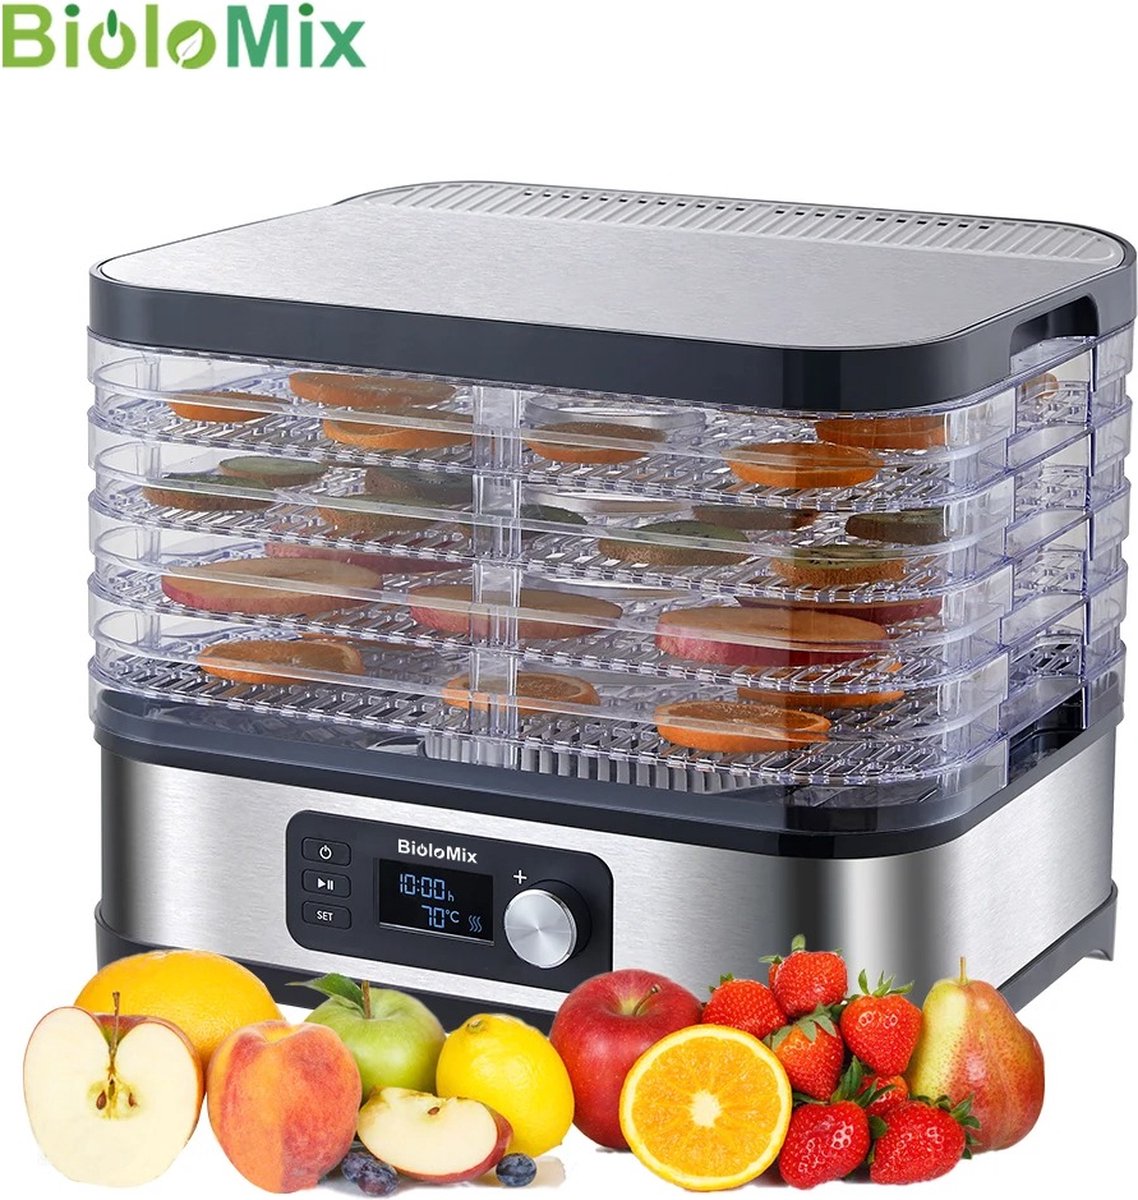 Biolomix Voedseldroger - Dehydrator - Fruitdroger - Voor Fruit, Groente, Vlees - 5-laags - Met Temperatuurregeling - Digitale Timer - BioloMix